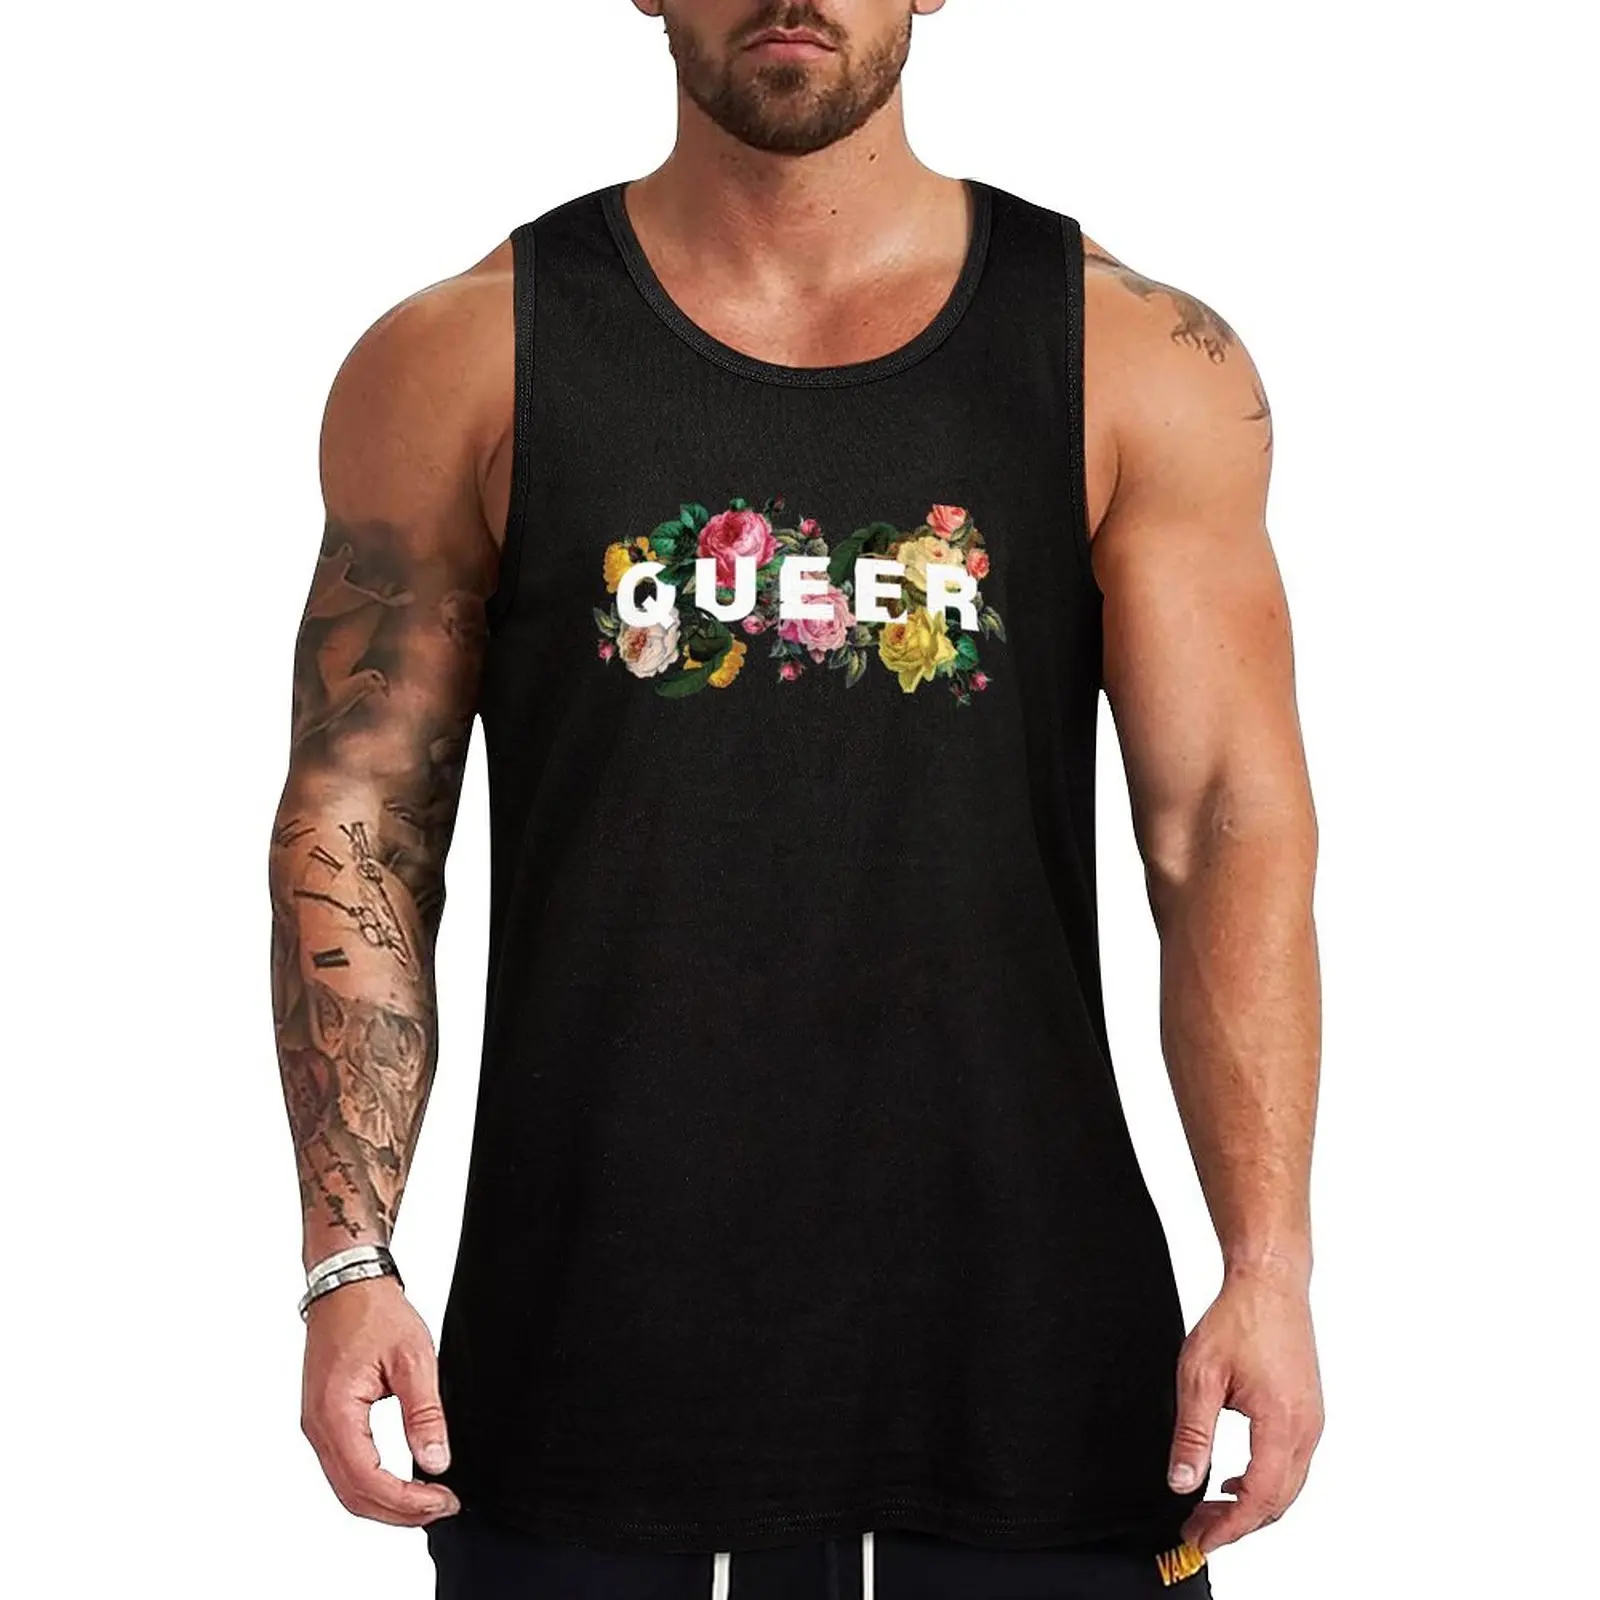 Queer (Античные розы) Майка, футболка, Мужская спортивная одежда для спортзала, мужской жилет, мужские футболки без рукавов,